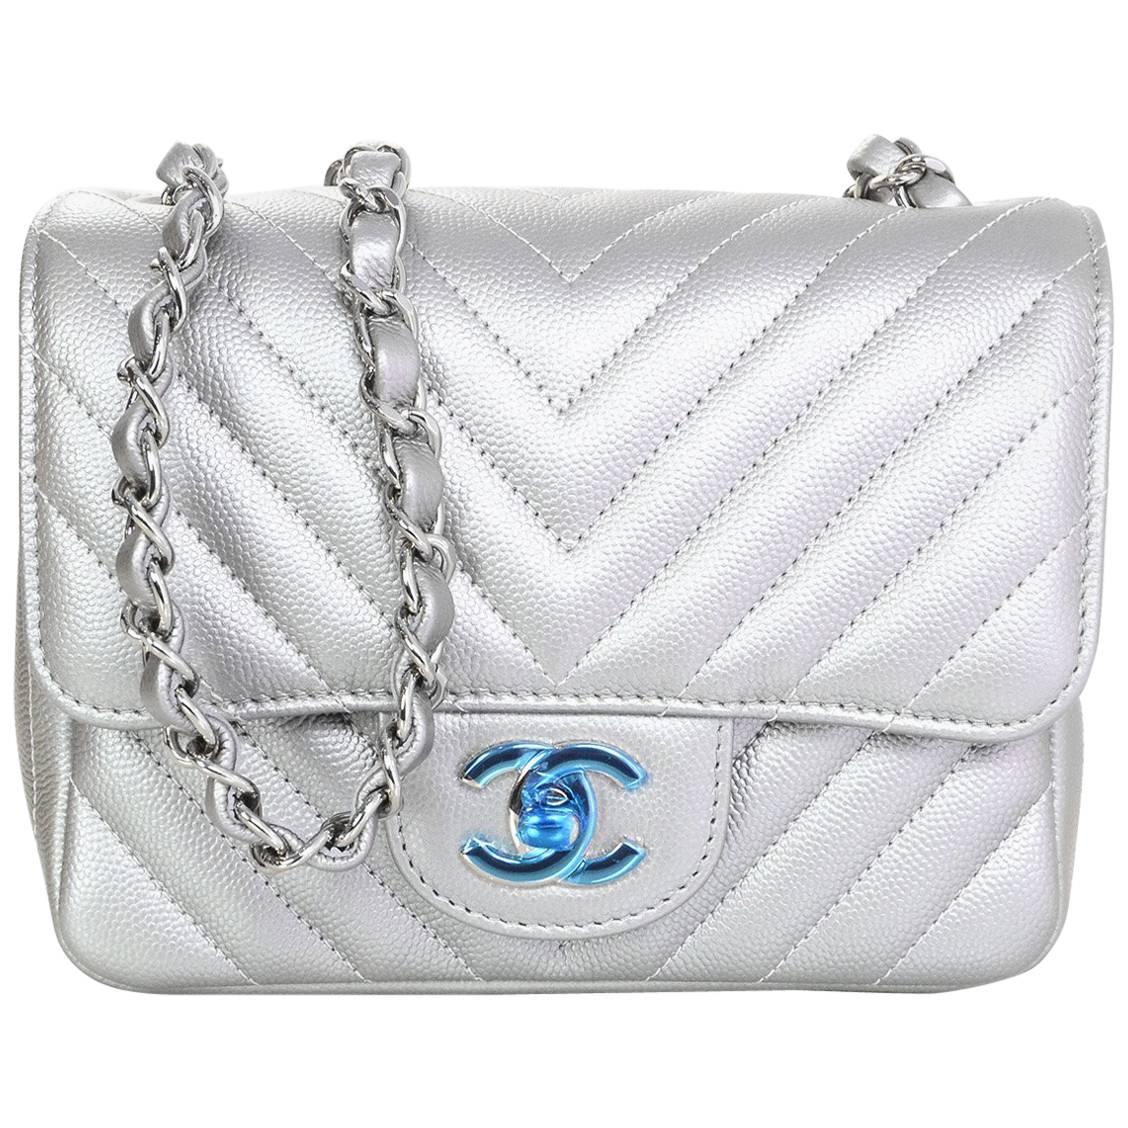 Chanel NEW 2016 Silver Caviar Leather Chevron Square Mini Flap Bag w/ Receipt